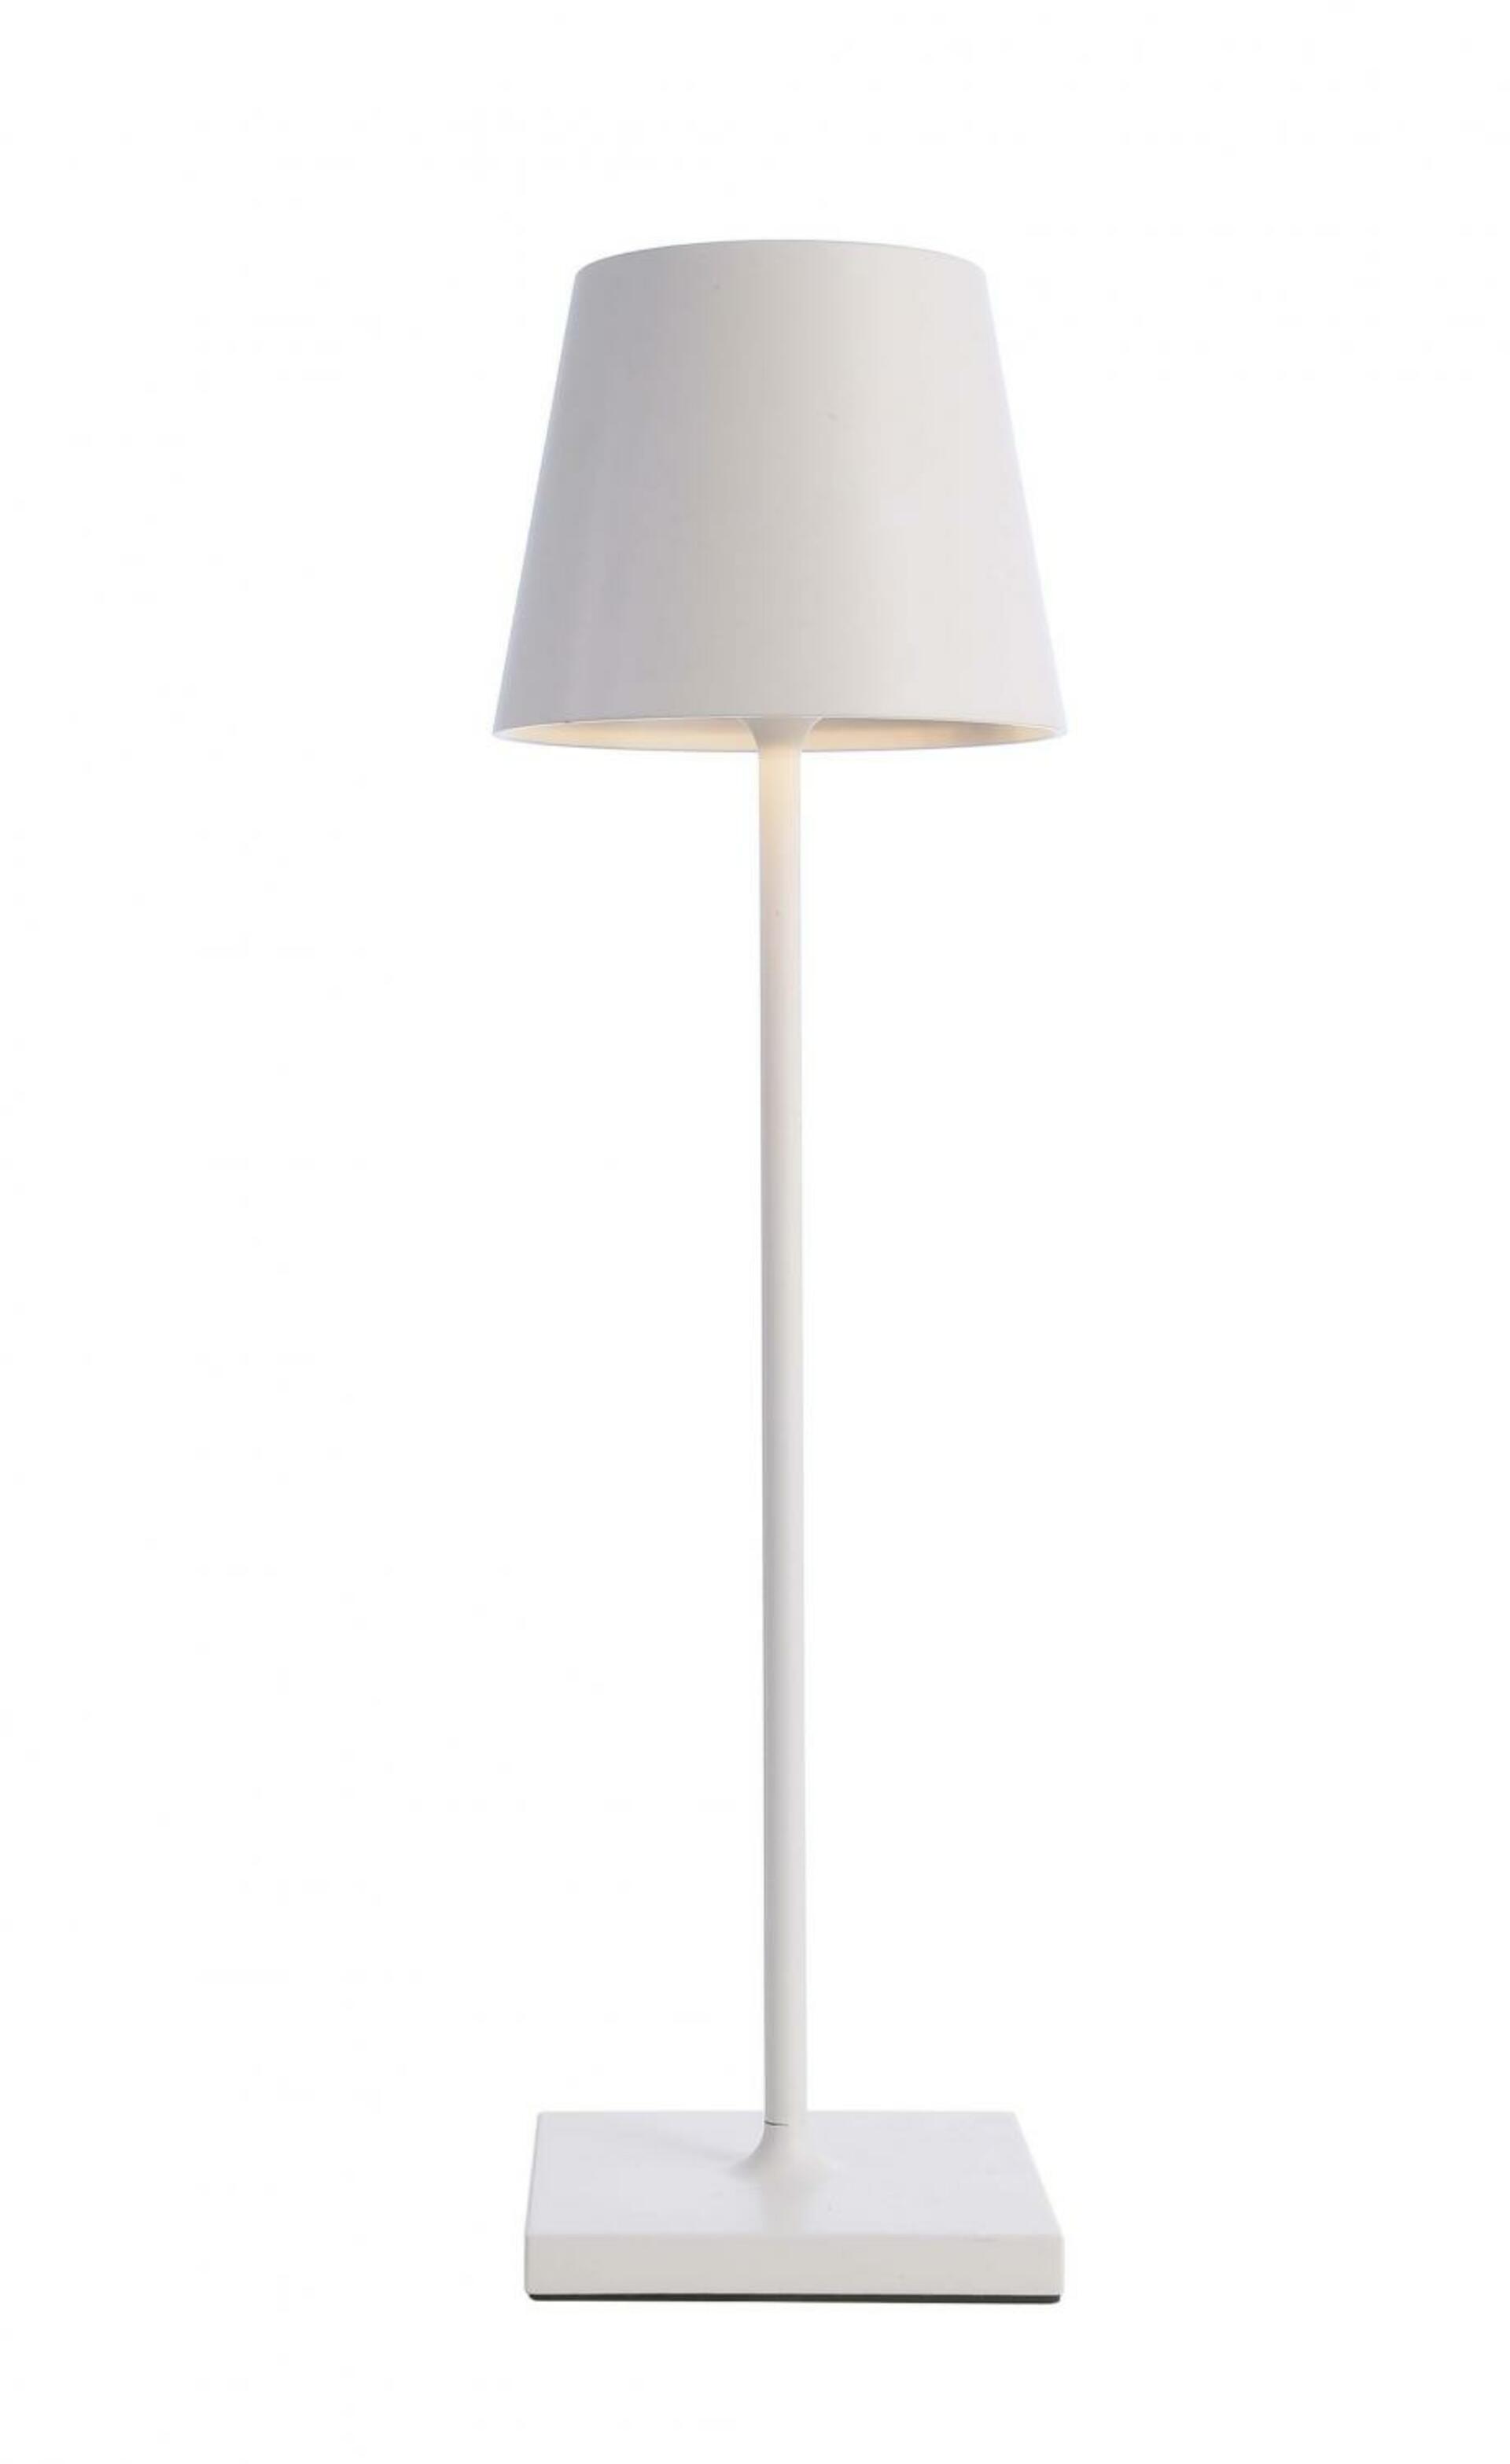 Light Impressions Deko-Light stolní lampa Sheratan I DIM 5V DC 2,20 W 3000 K 154 lm 100 bílá 346011